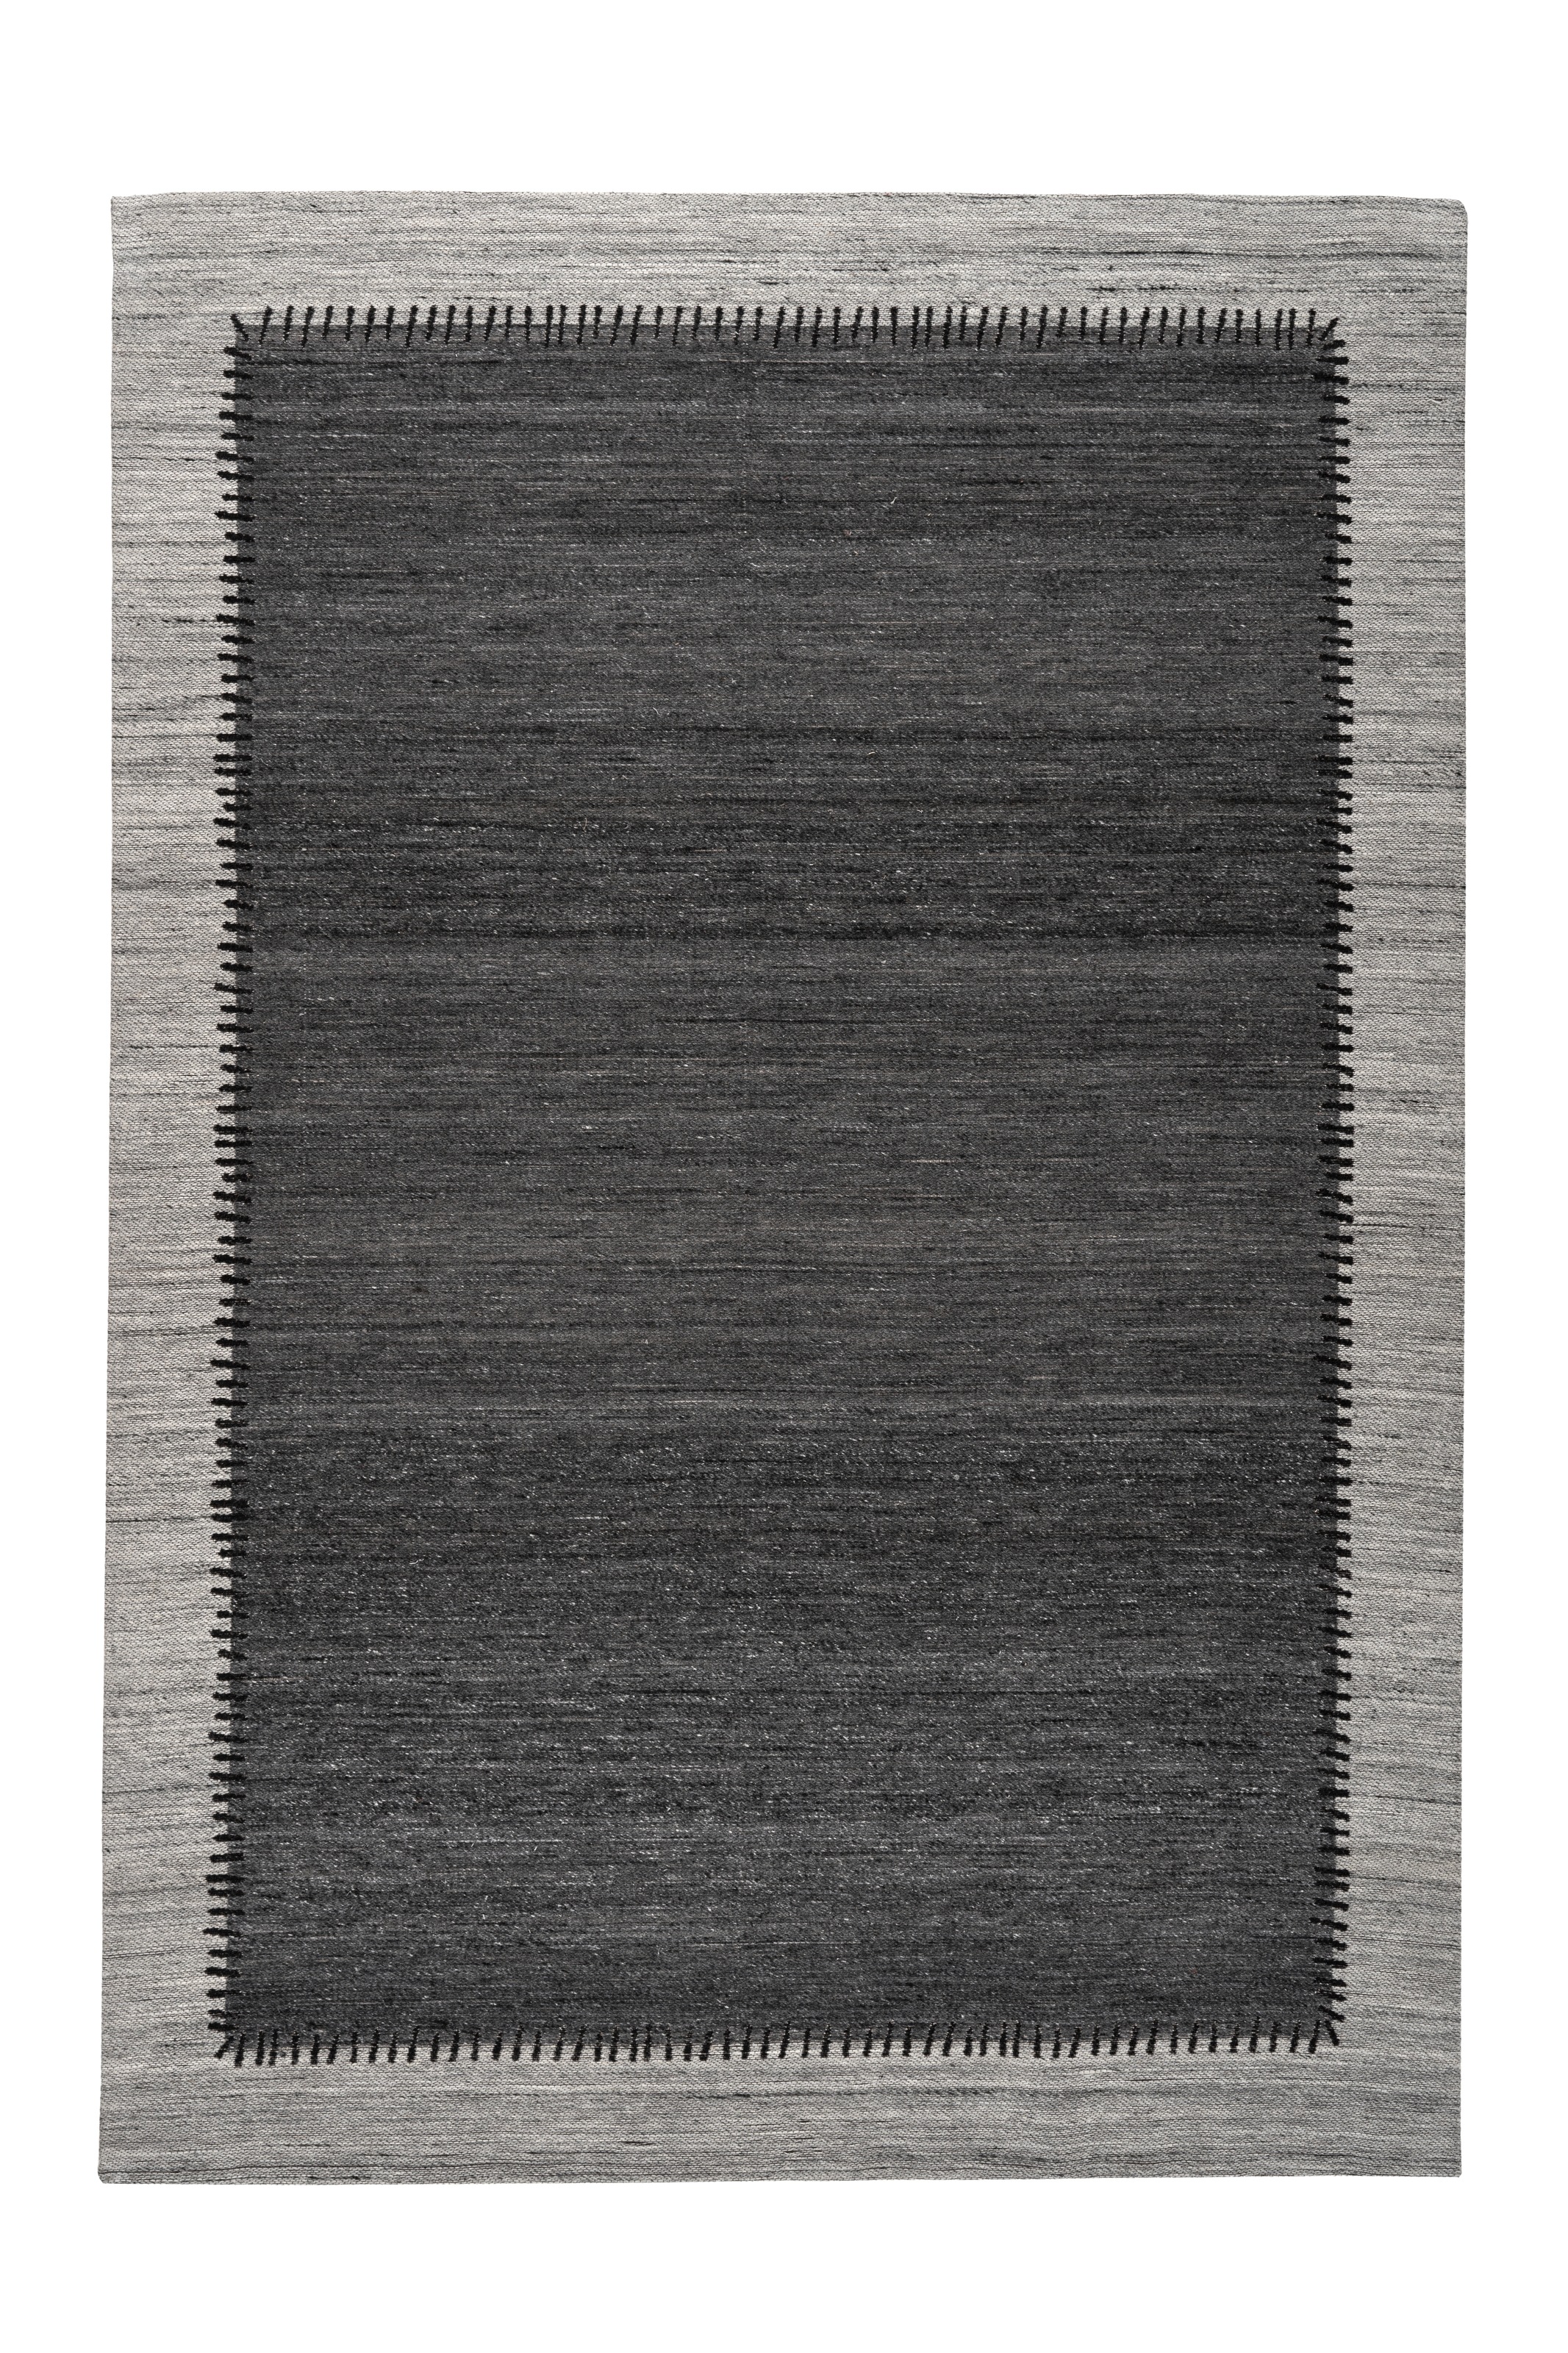 Kayoom Teppich »Phoenix 310«, rechteckig, Dezenter Jacquard-Teppich, Flachflor, Aus pflegeleichten Materialien